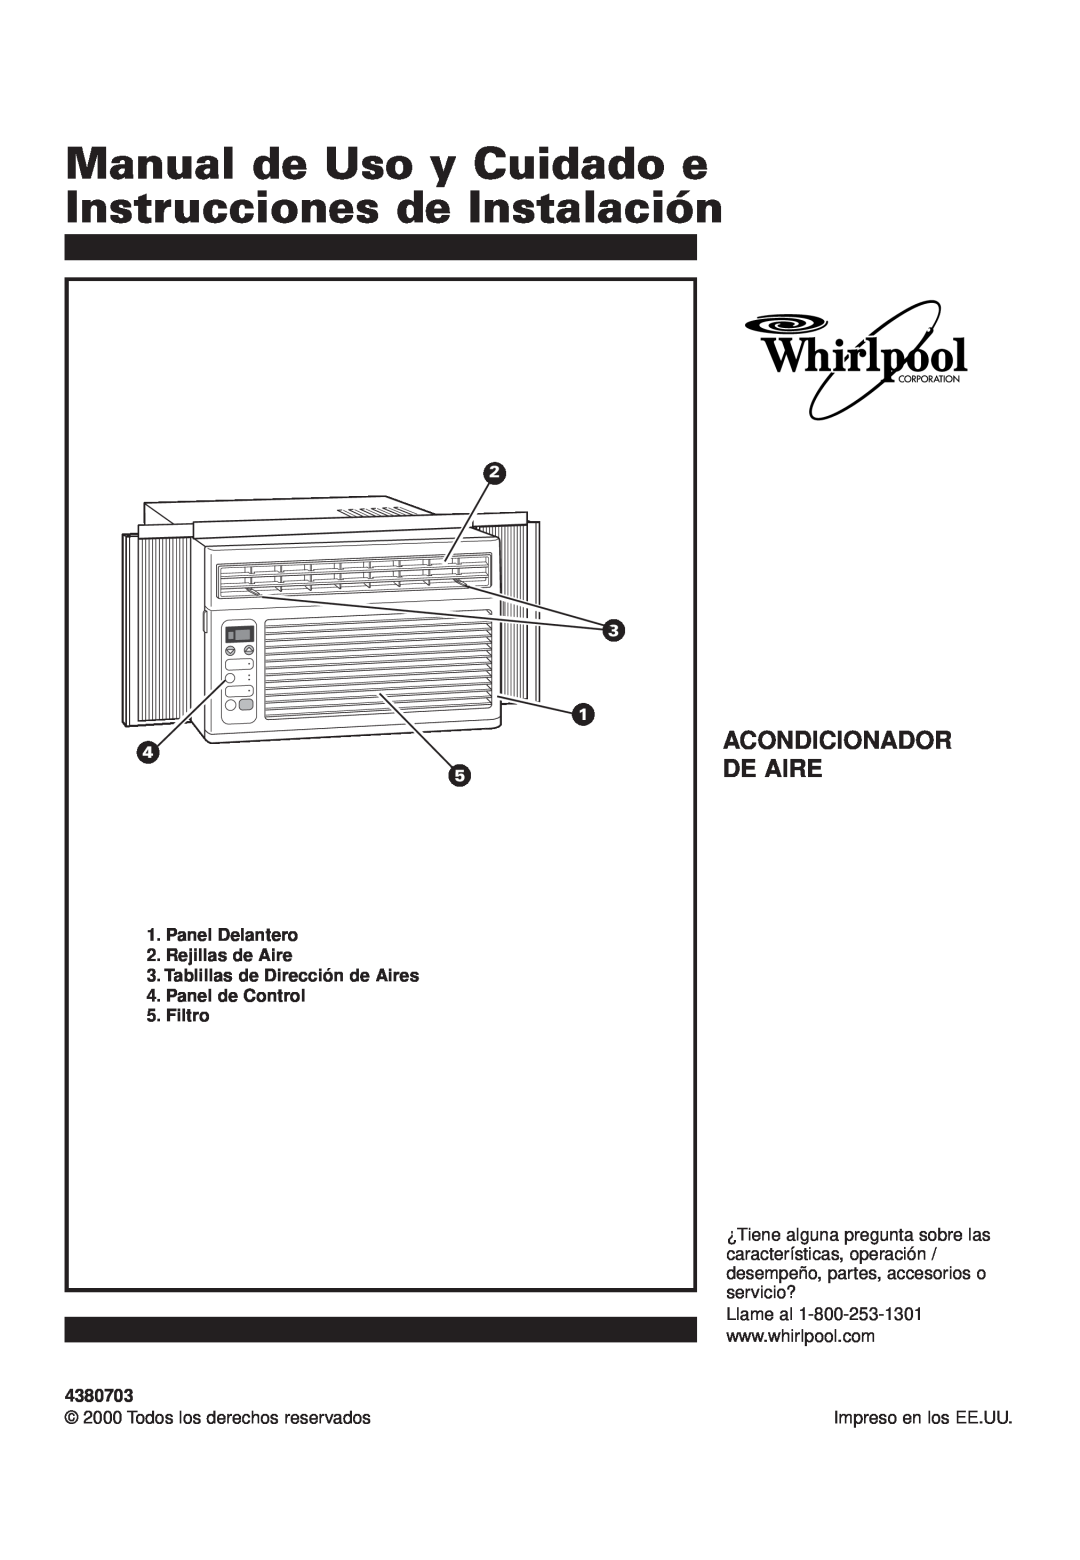 Whirlpool ACQ052PK0 Manual de Uso y Cuidado e Instrucciones de Instalación, Acondicionador De Aire, Panel Delantero 